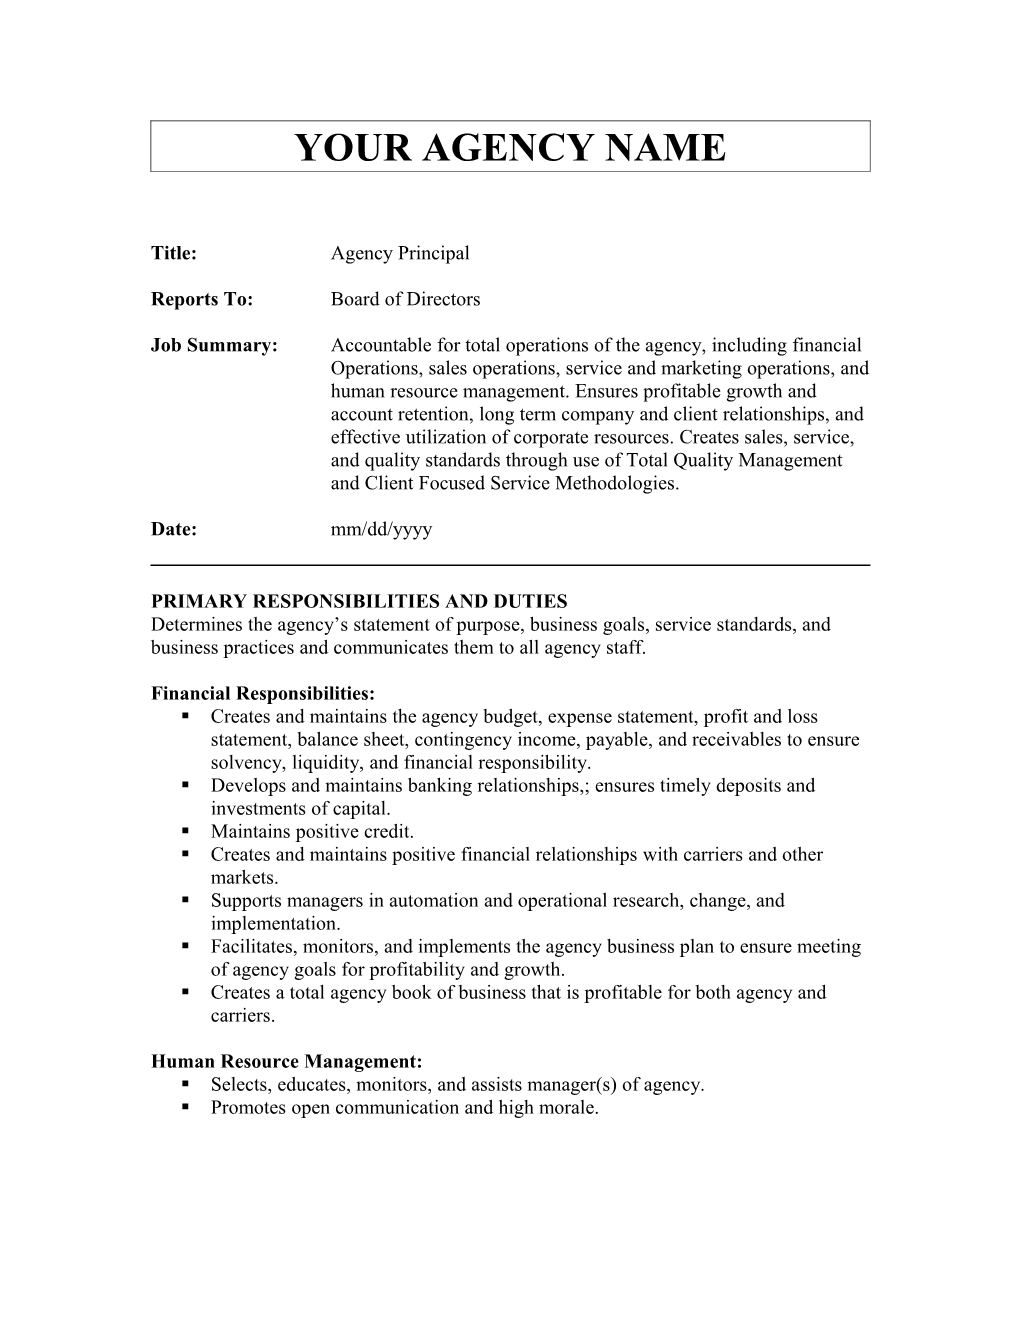 Sample Job Description - Agency Principal